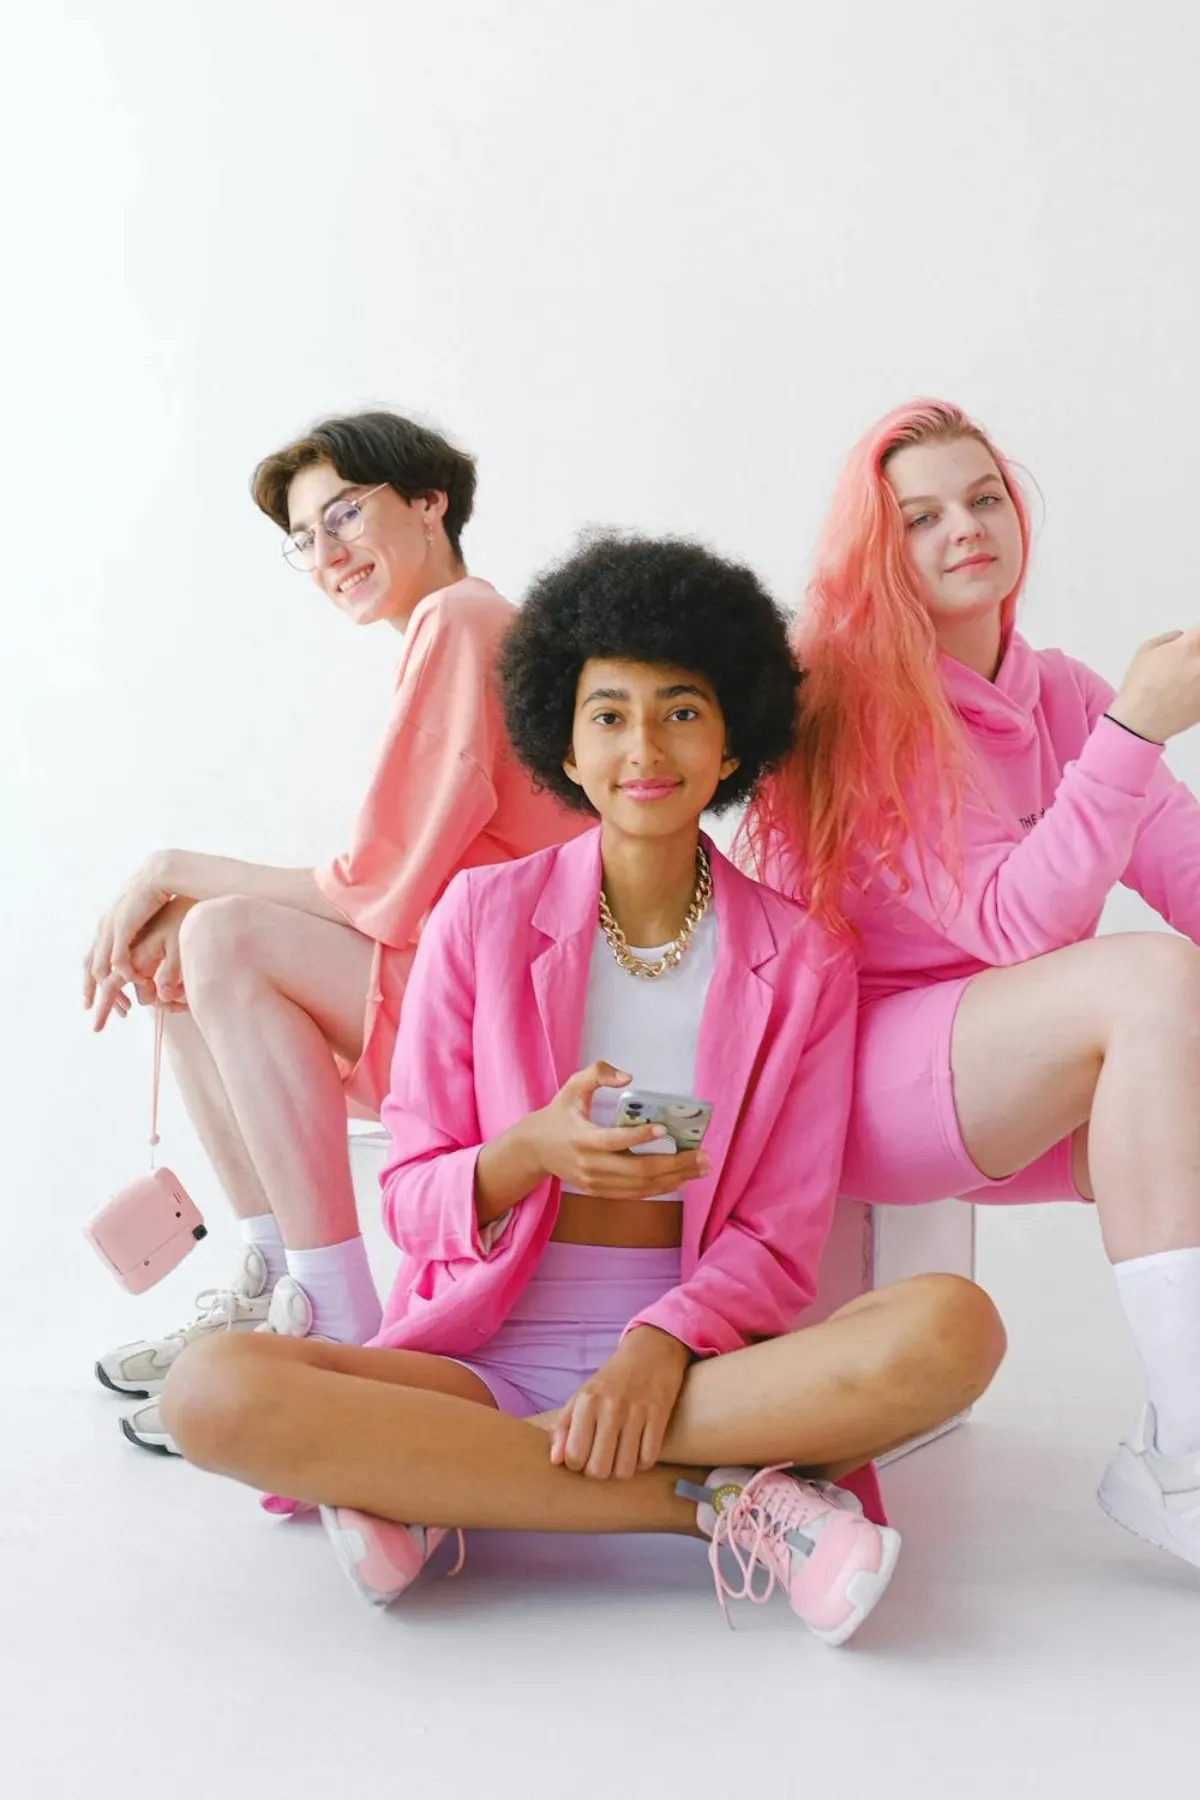 une photo de la generation z filles habilles en rose et un garcon